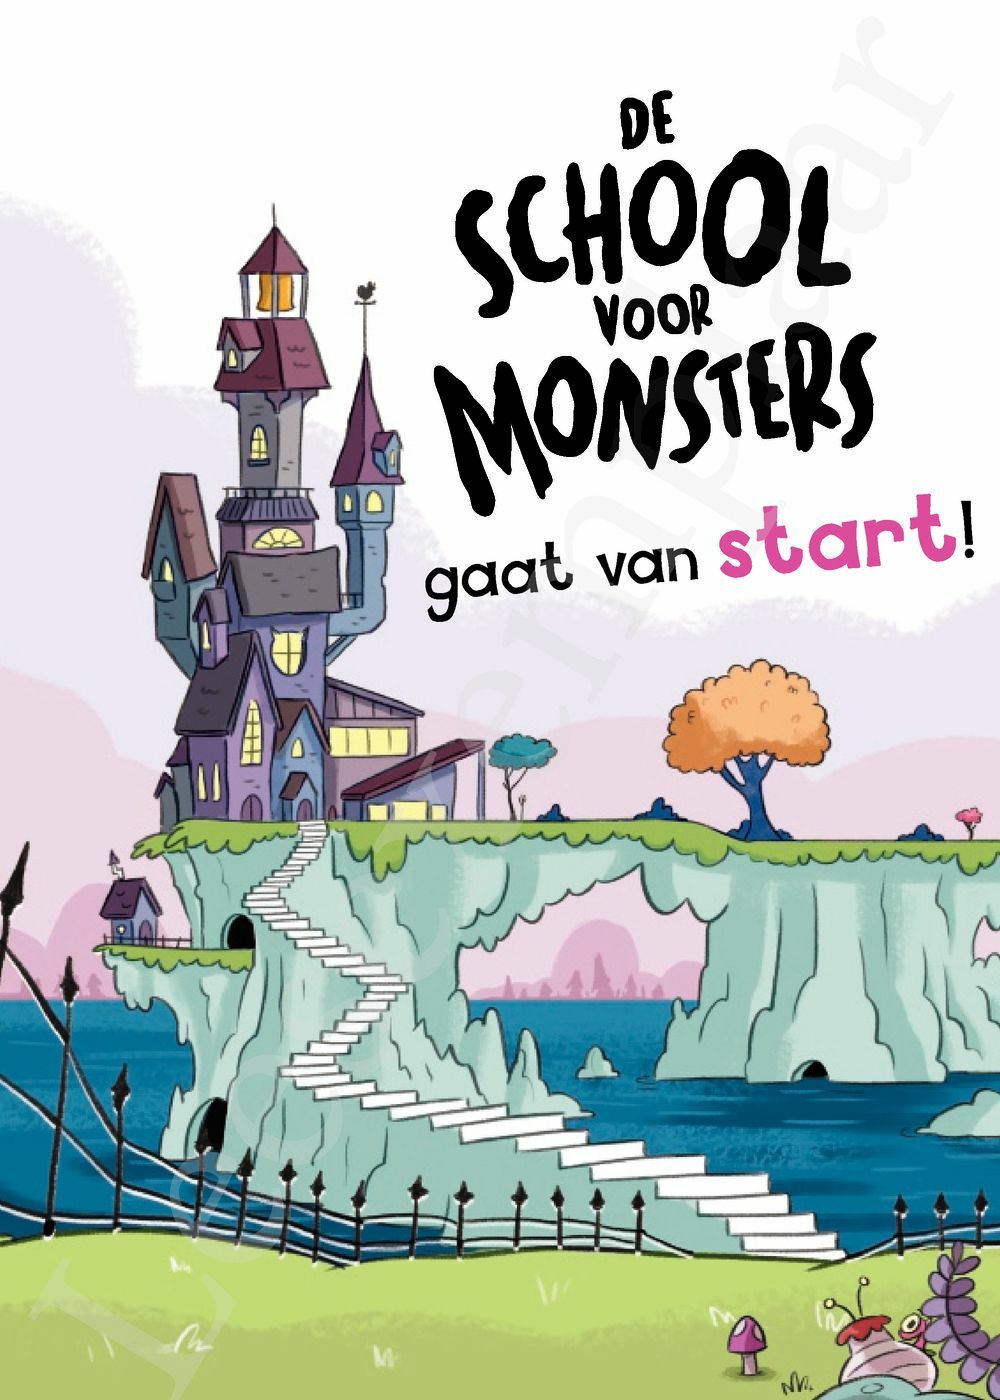 Preview: De school voor monsters - Lies maakt alles vies